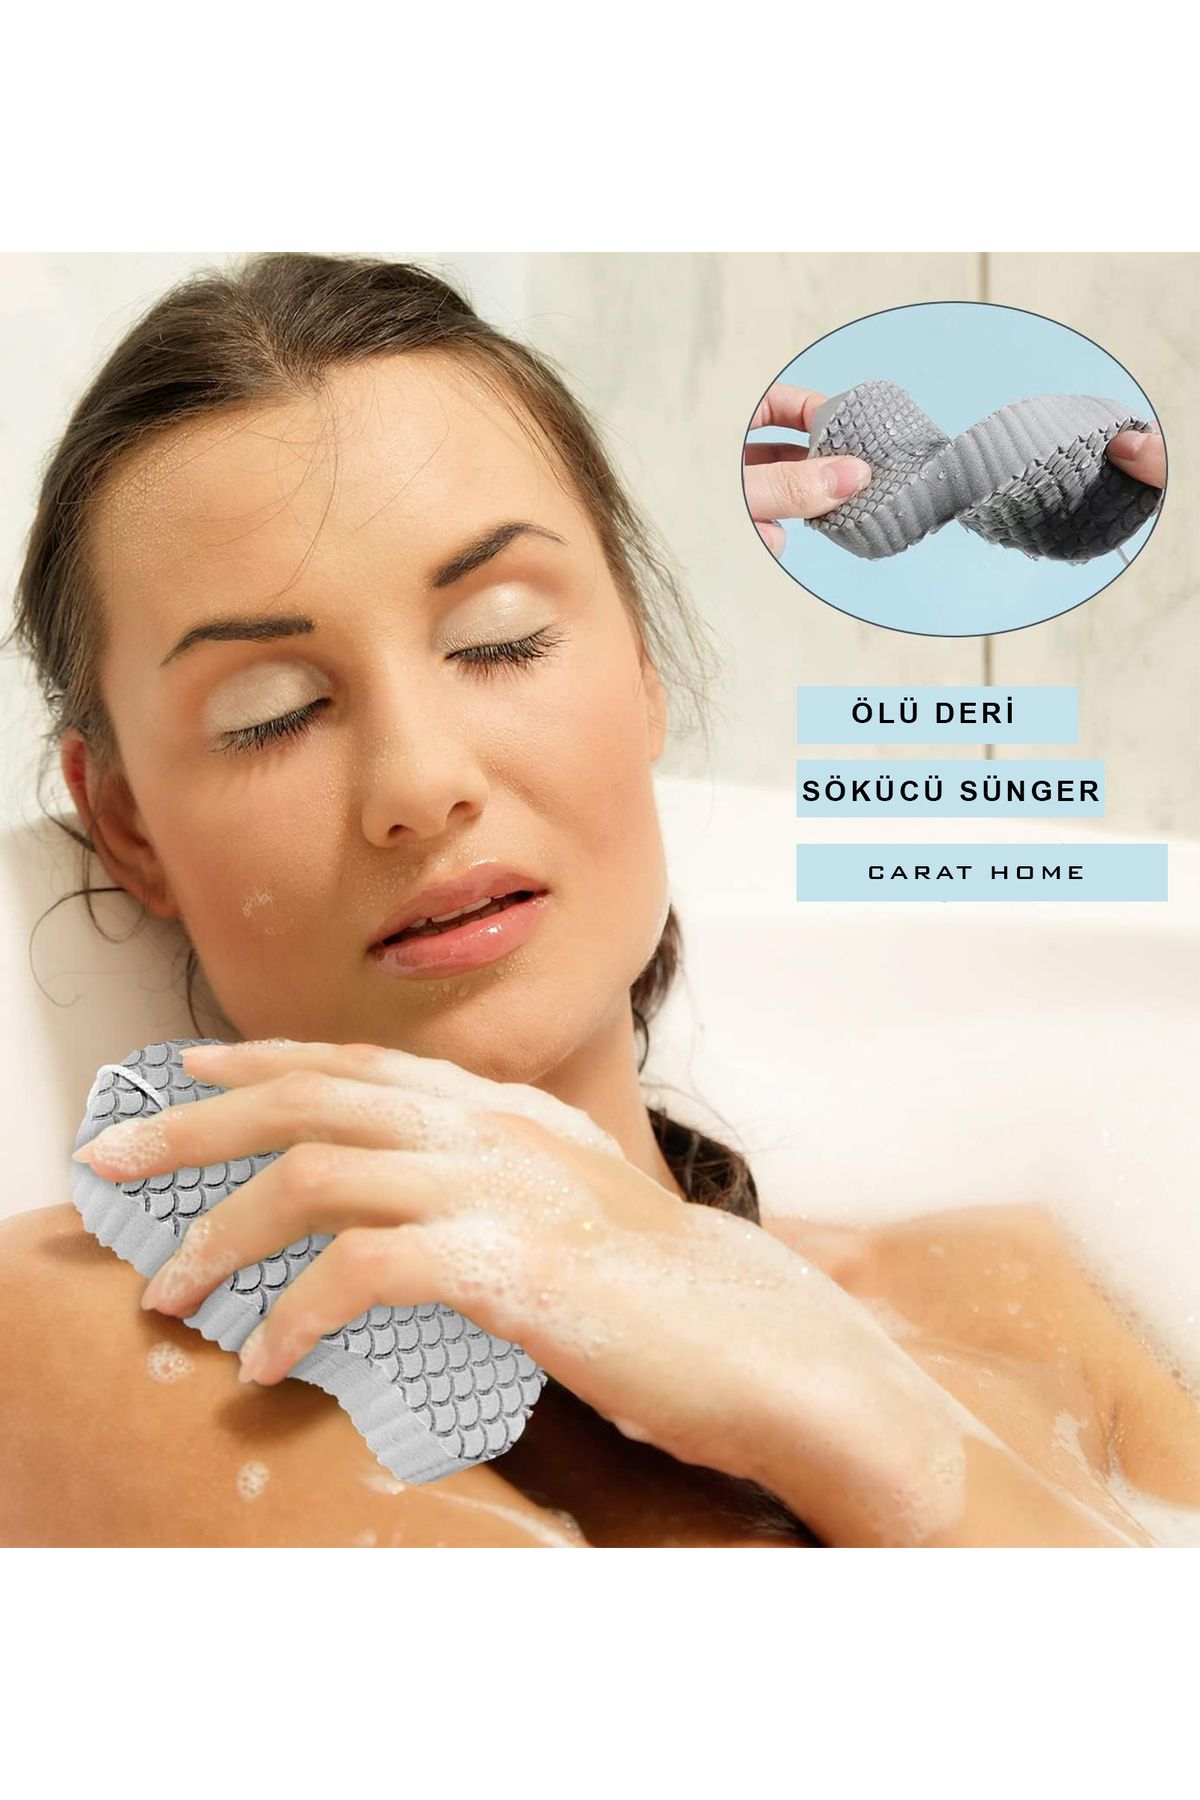 Carat Home Banyo Vücut Duş Süngeri Sihirli Vücut Ölü Deri Sökücü Vücut Masaj Peeling Fırçası Süngeri